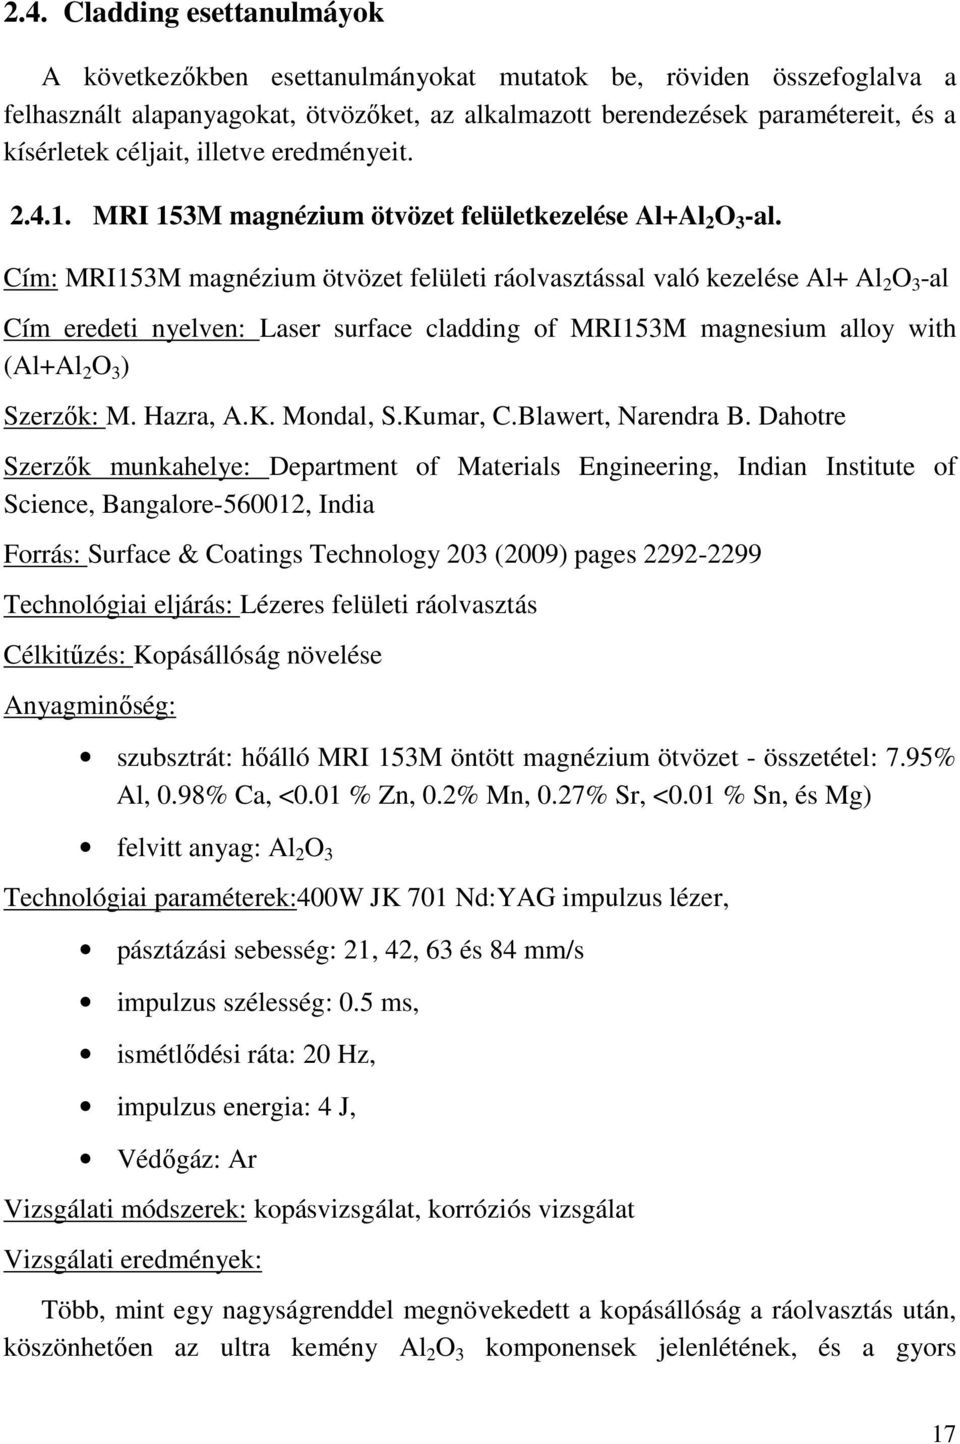 Cím: MRI153M magnézium ötvözet felületi ráolvasztással való kezelése Al+ Al 2 O 3 -al Cím eredeti nyelven: Laser surface cladding of MRI153M magnesium alloy with (Al+Al 2 O 3 ) Szerzők: M. Hazra, A.K.